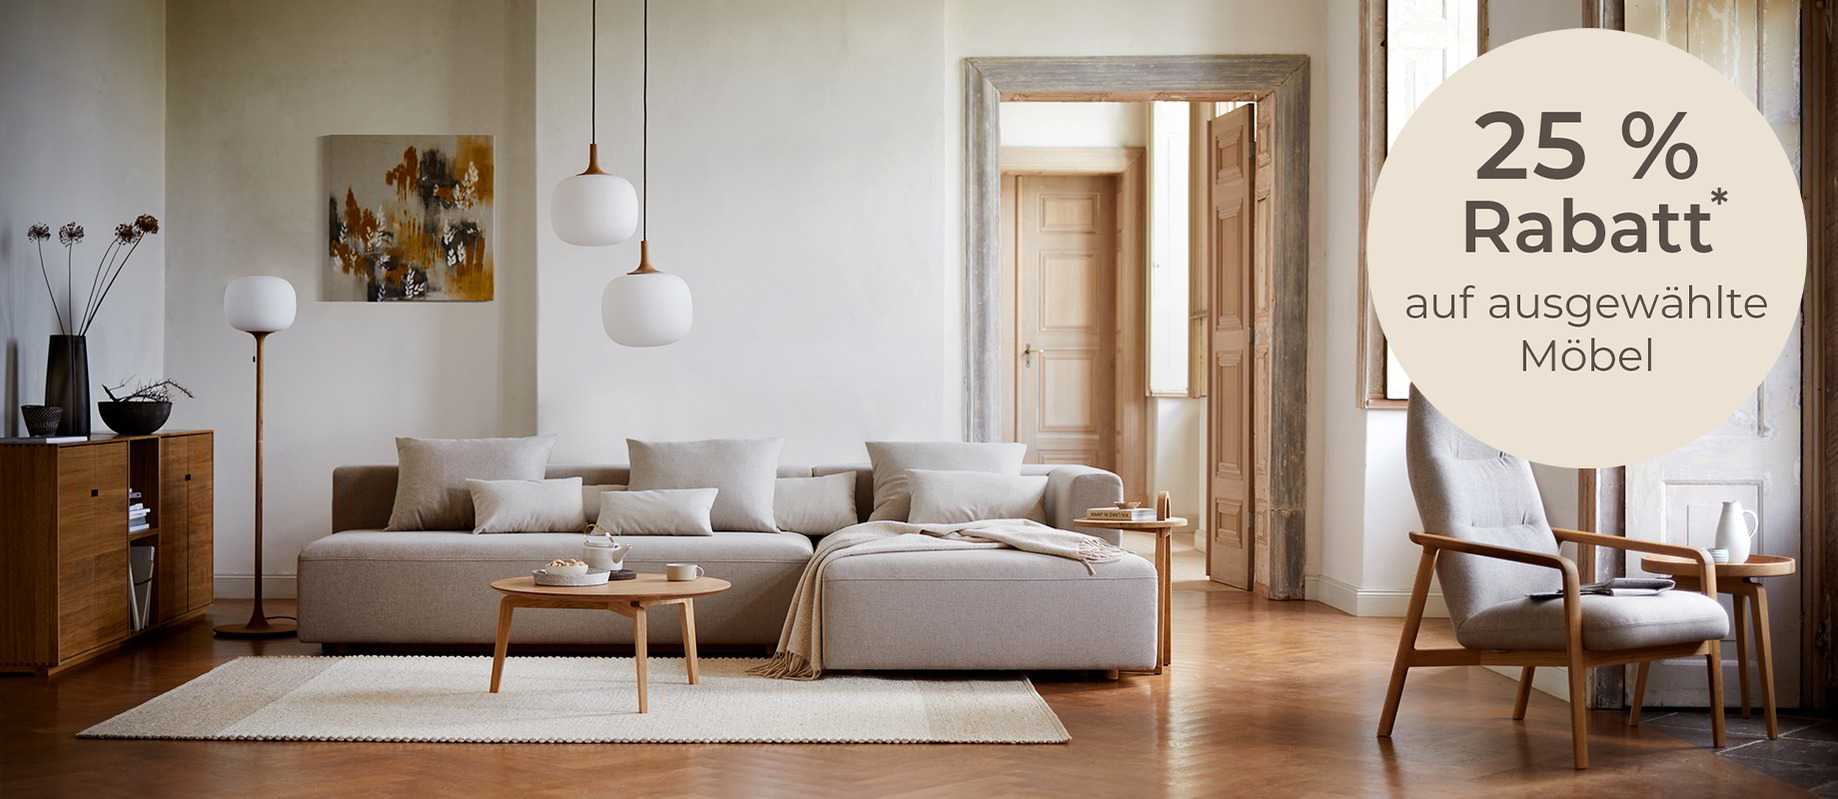 Ein Wohnzimmer mit bodennaher Couch, skandinavisch eingerichtet